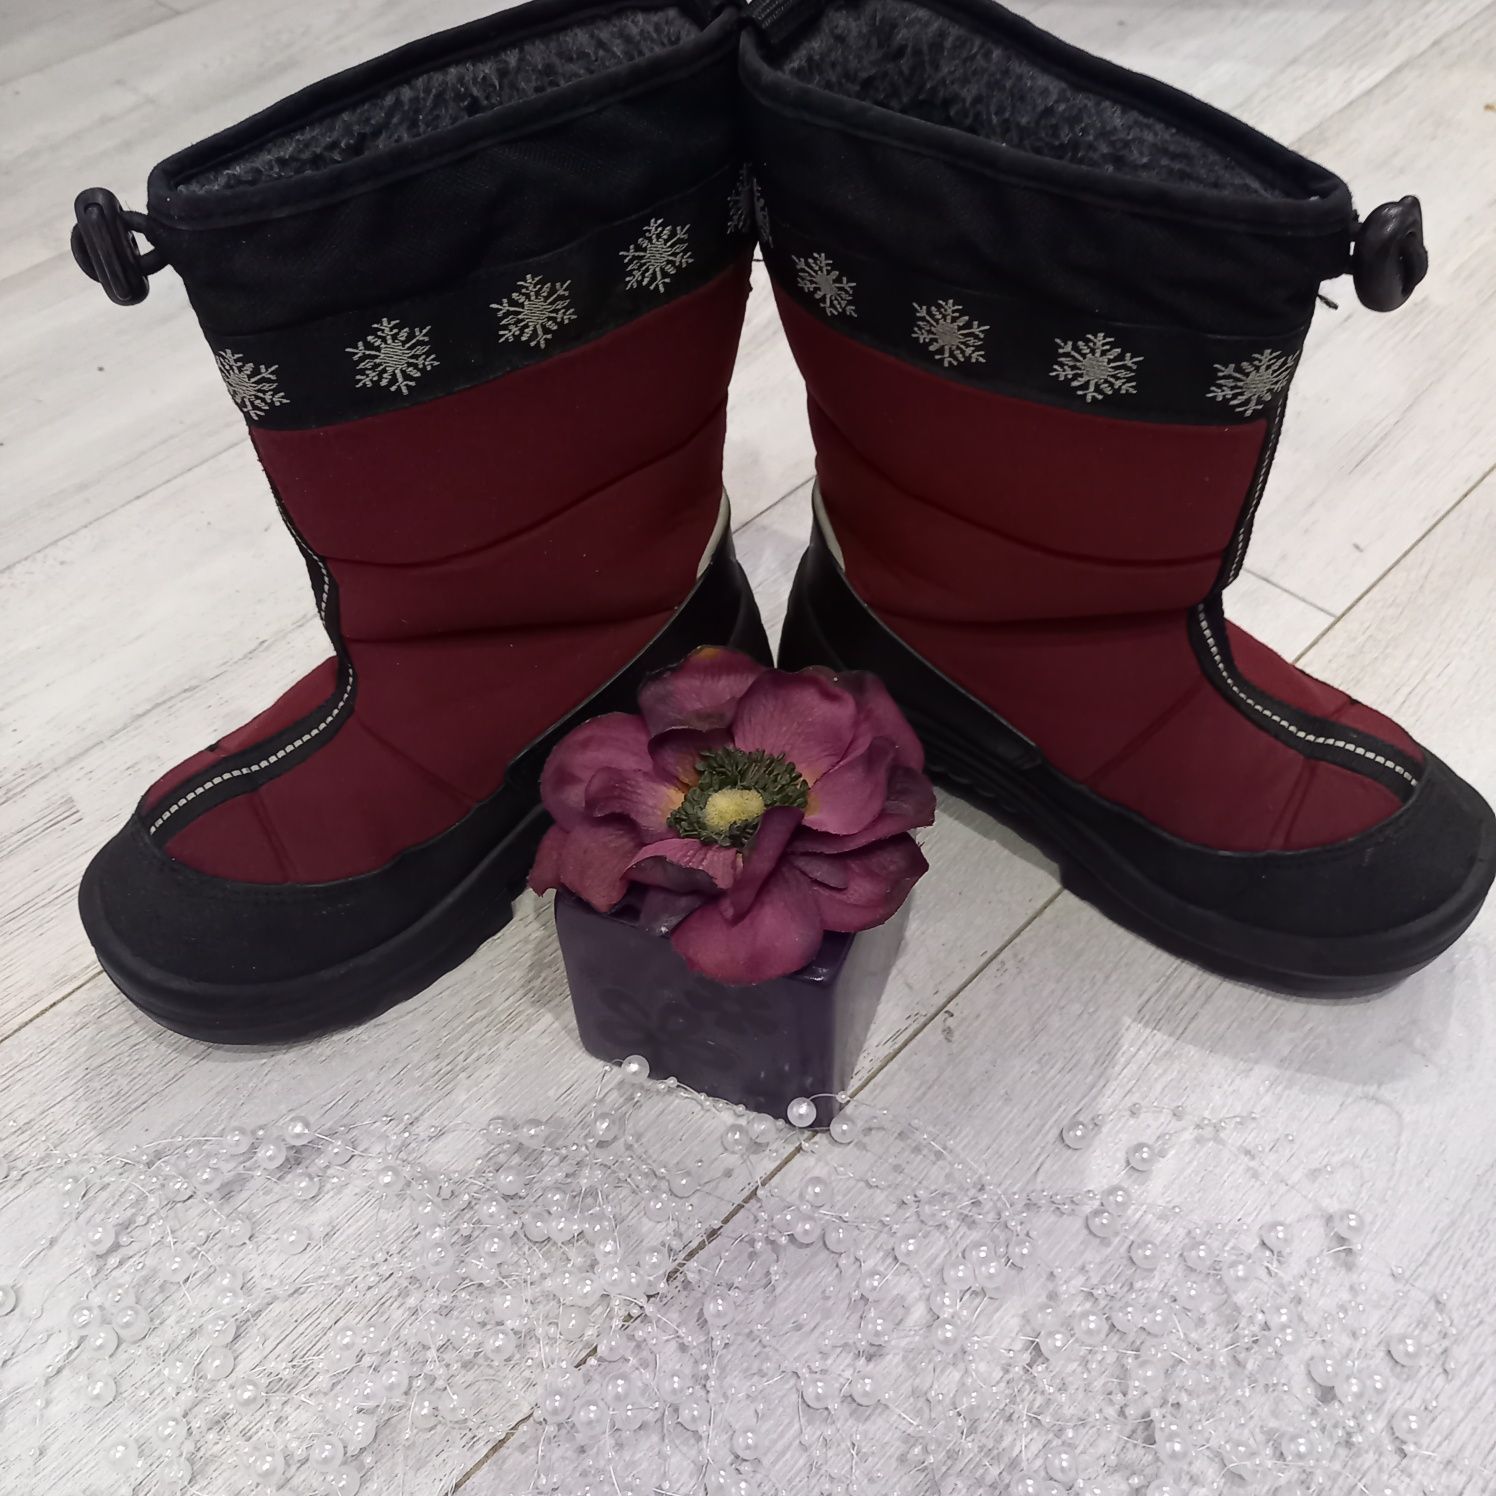 Зимові чобітки валянки Kuoma 32р дівч